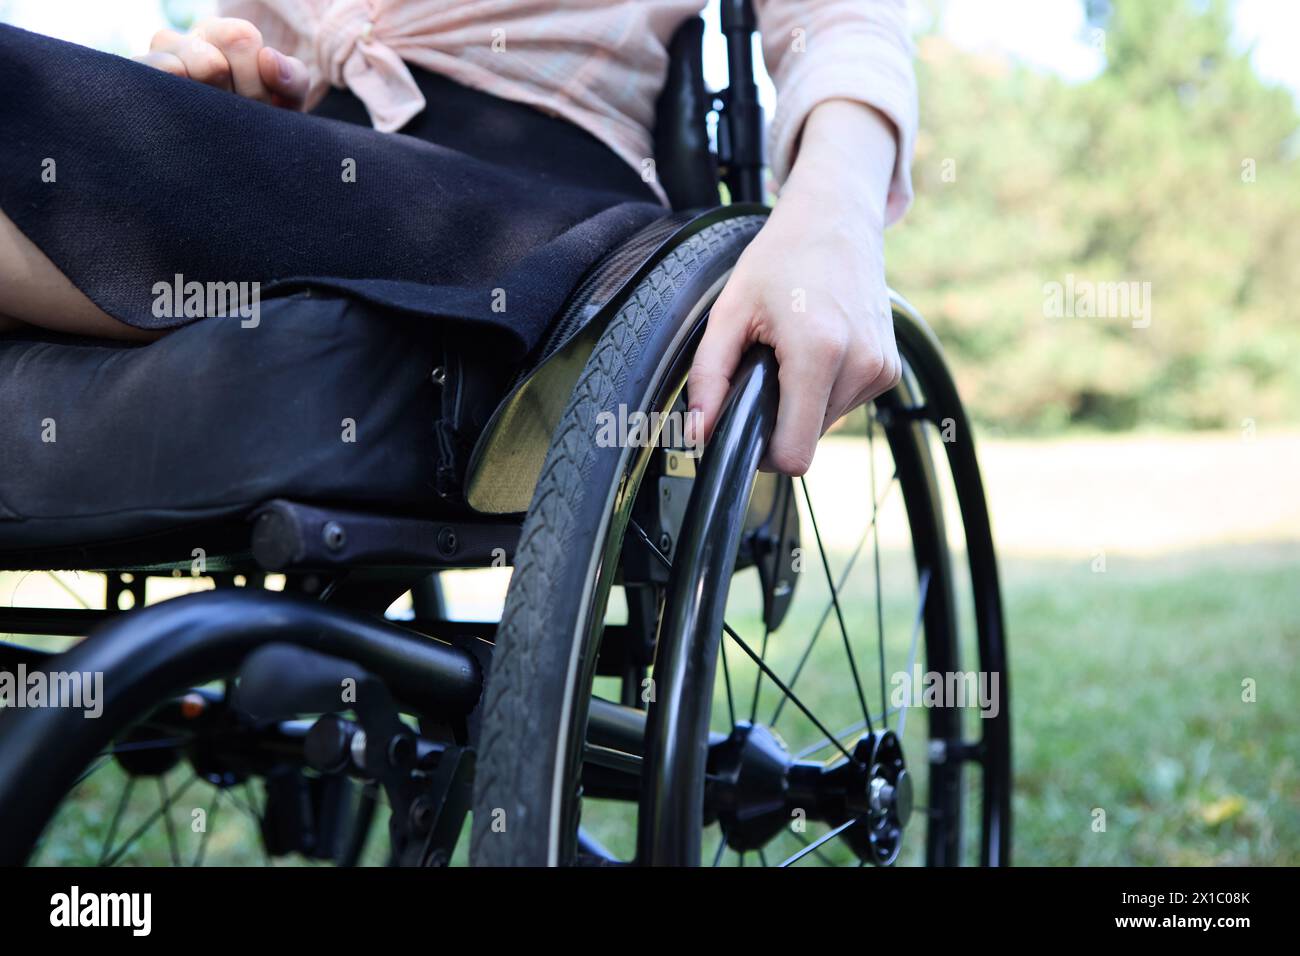 Nahaufnahme einer Person, die einen Rollstuhl in einem malerischen Park manövriert. Dieses Foto zeigt die Essenz von Barrierefreiheit und aktivem Lebensstil Stockfoto